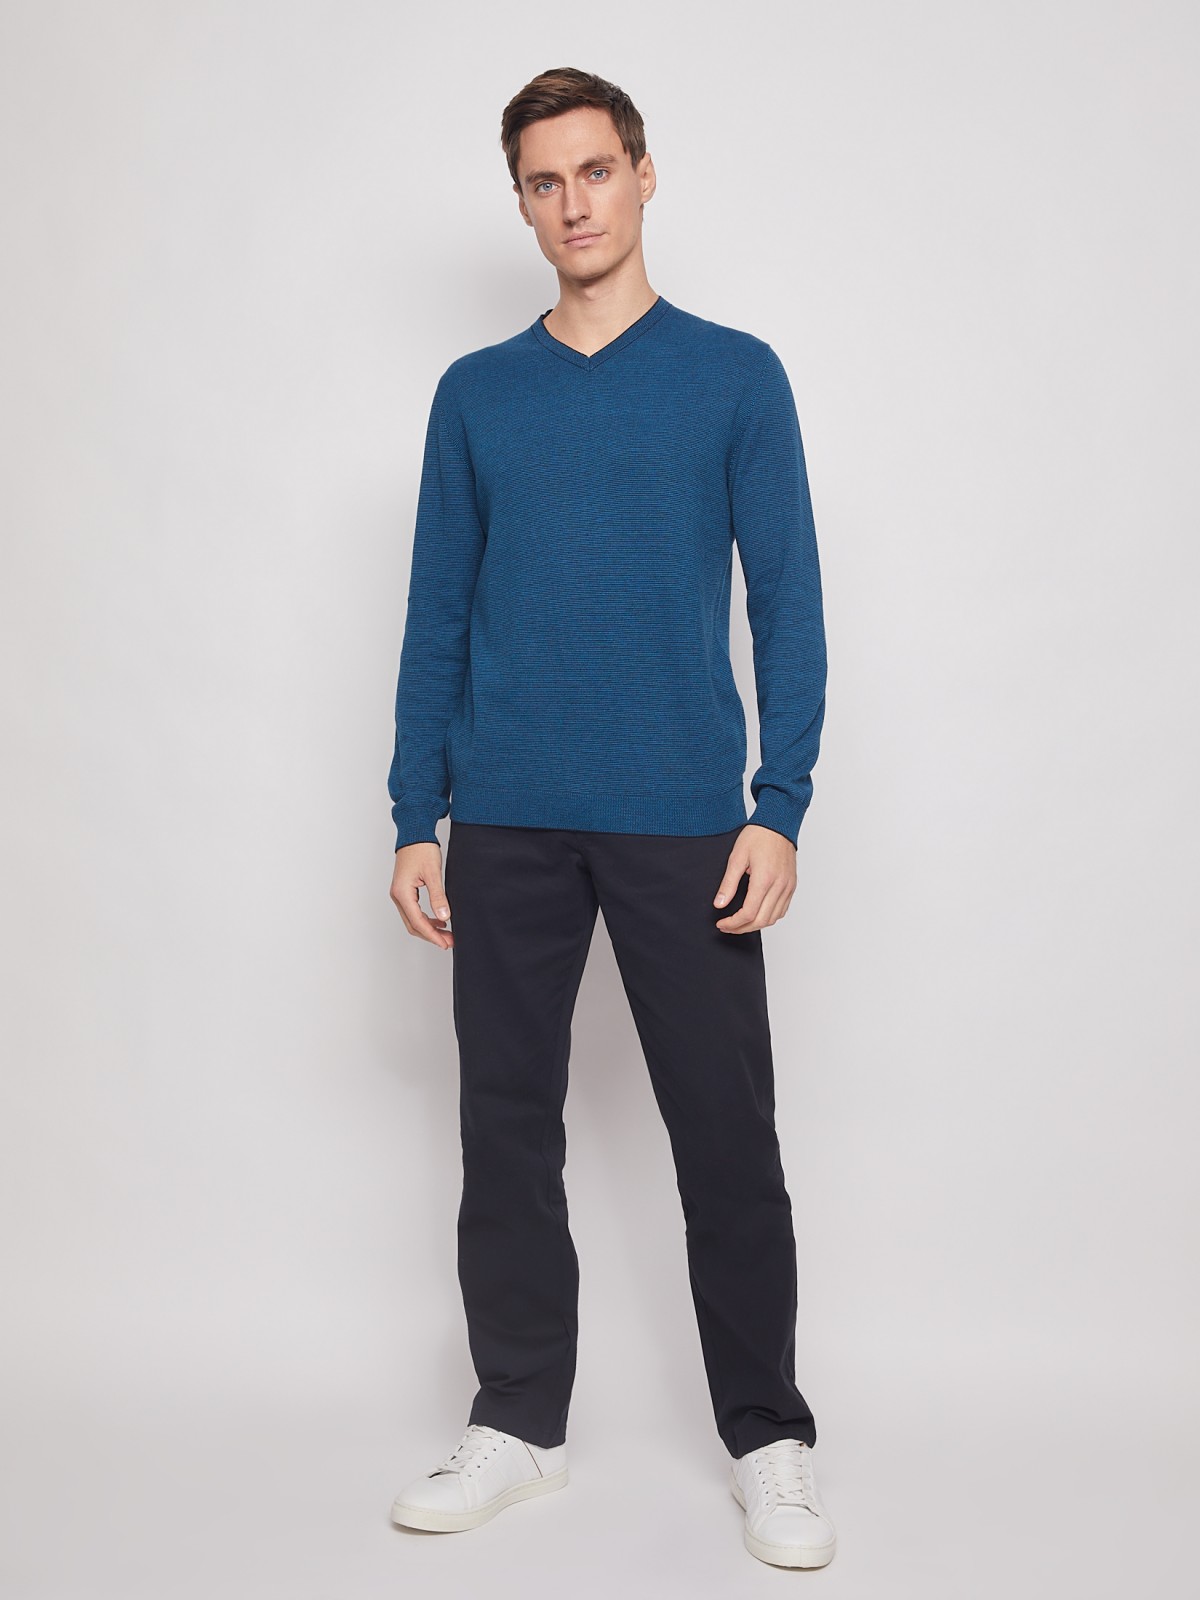 Пуловер с V-образным вырезом zolla 012116163162, цвет темно-бирюзовый, размер M - фото 6